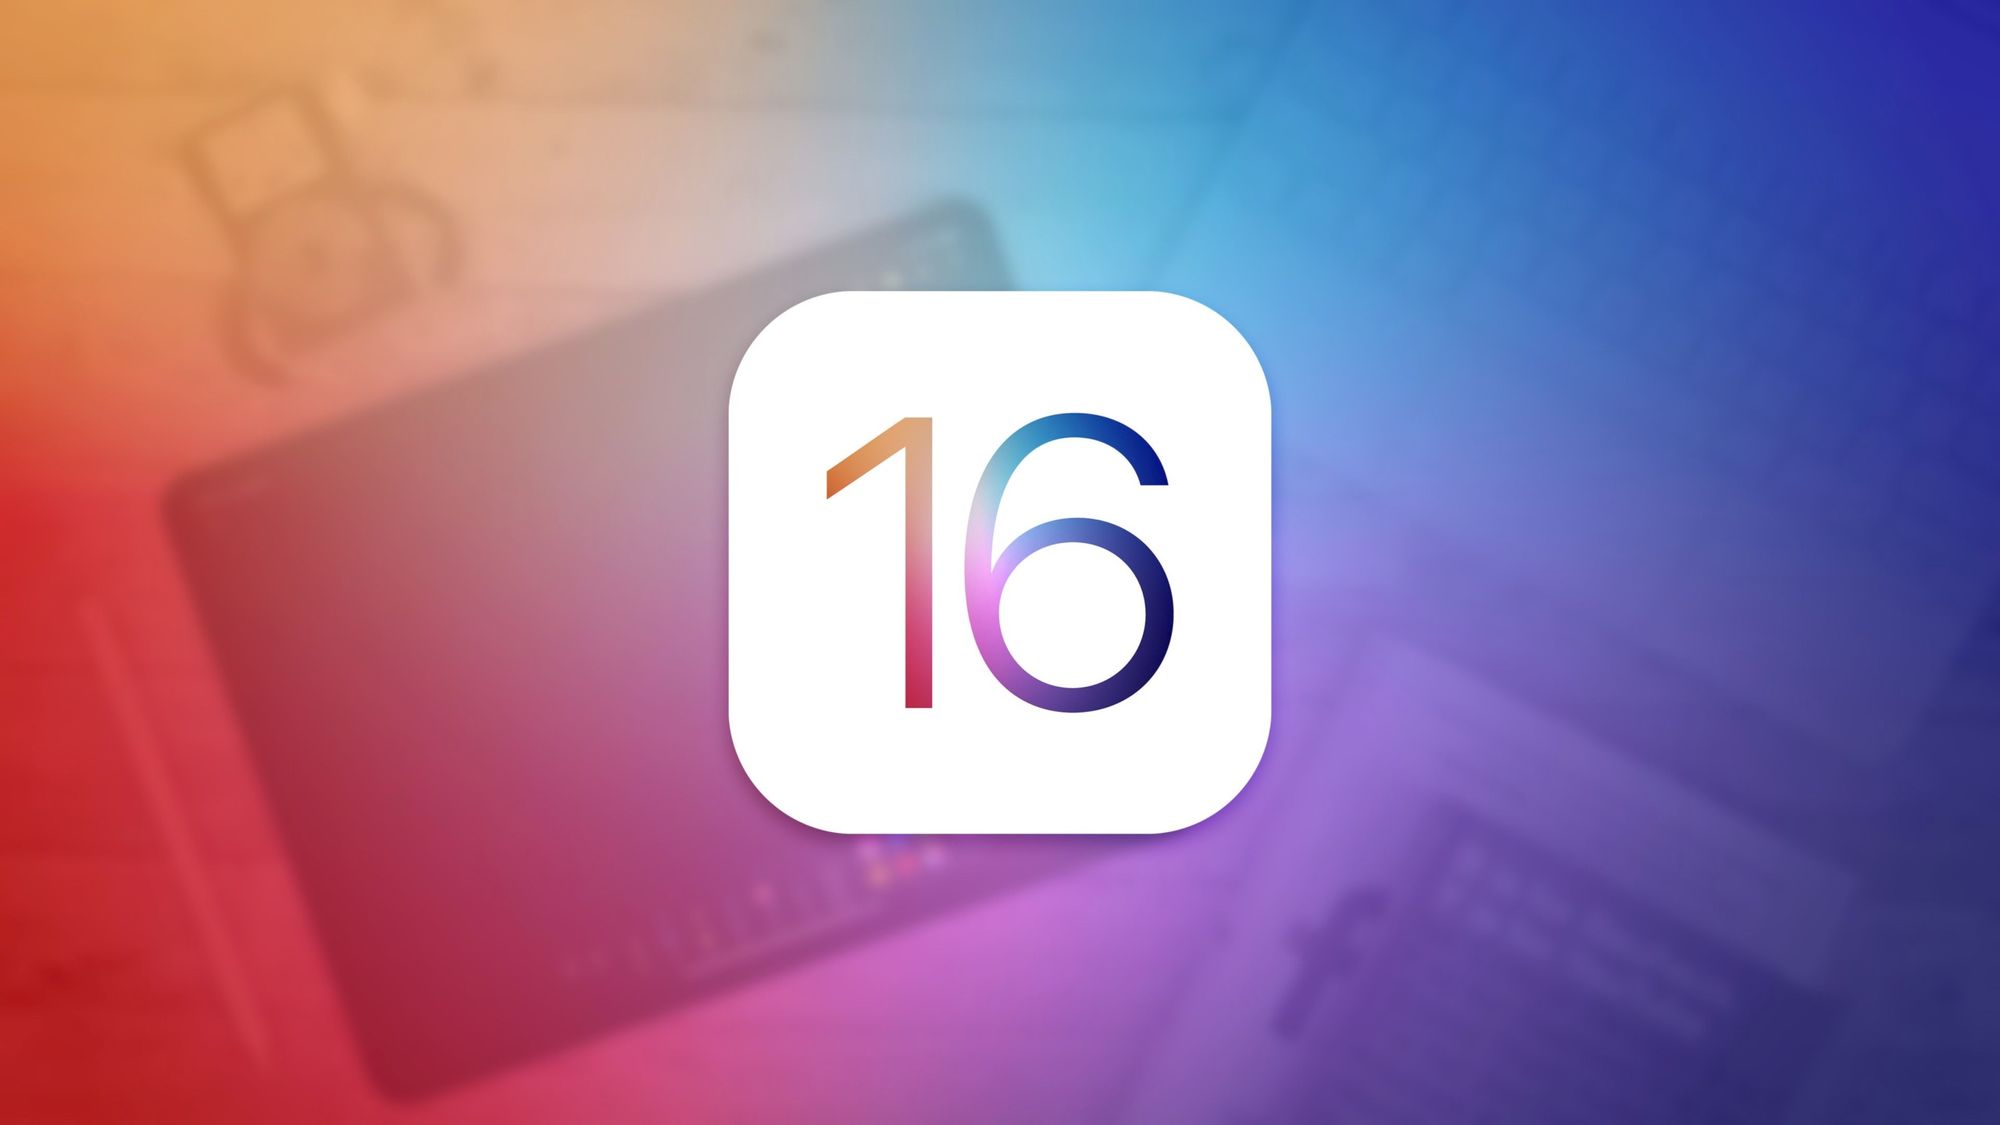 Apple официально представила iOS 16 с обновлённым экраном блокировки